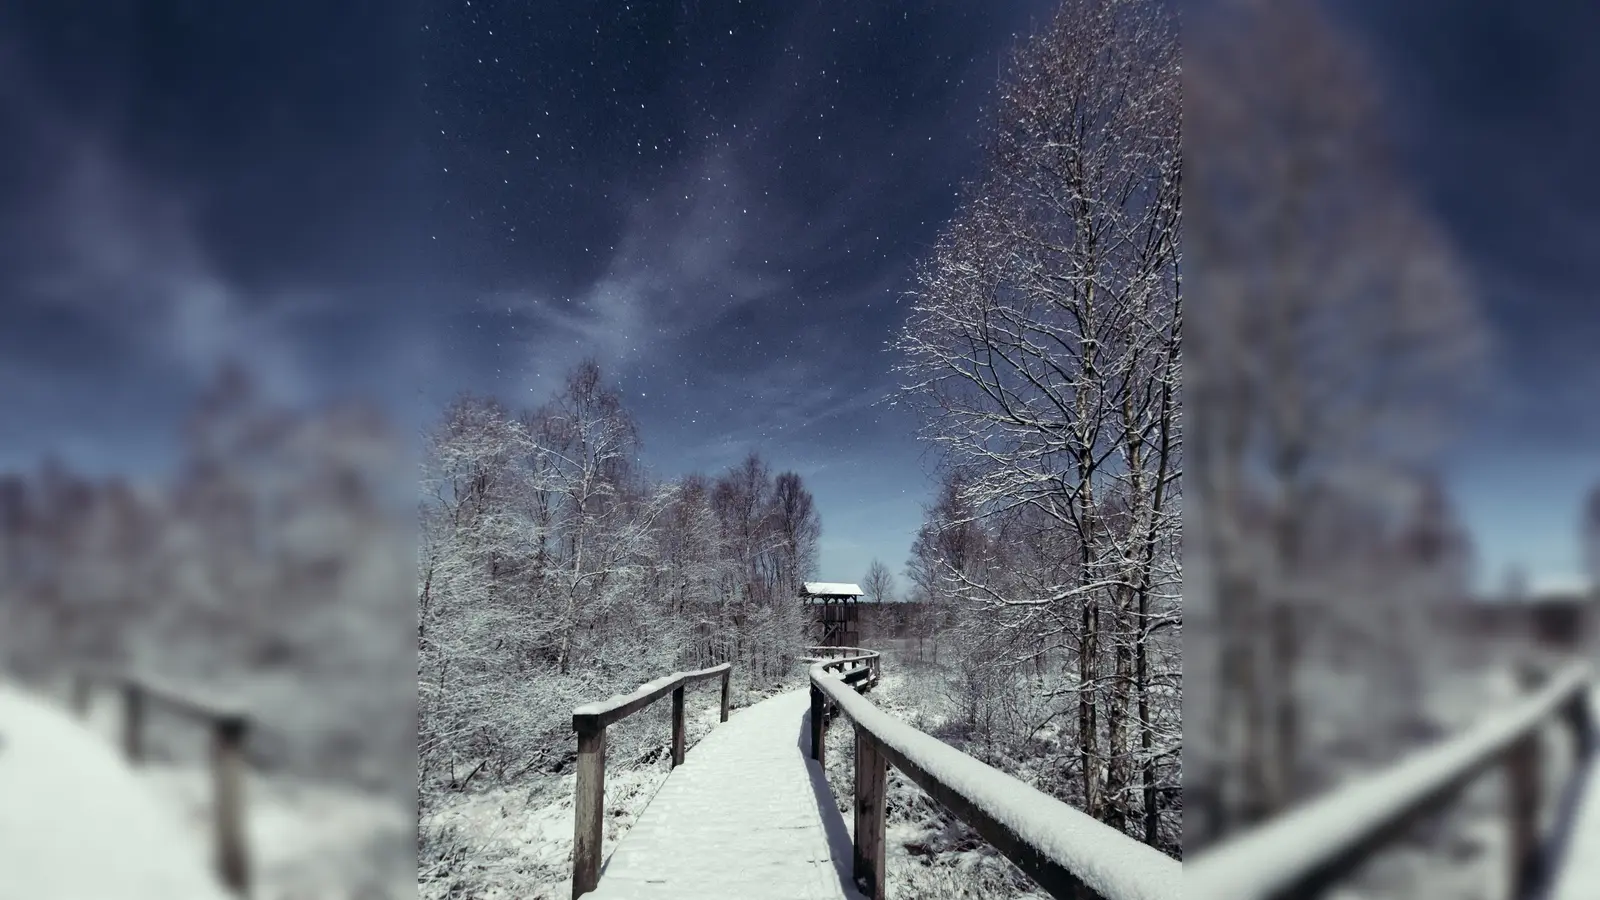 Winterliches Hochmoor Mecklenbruch im Mondlicht. (Foto: M. Goduscheit)